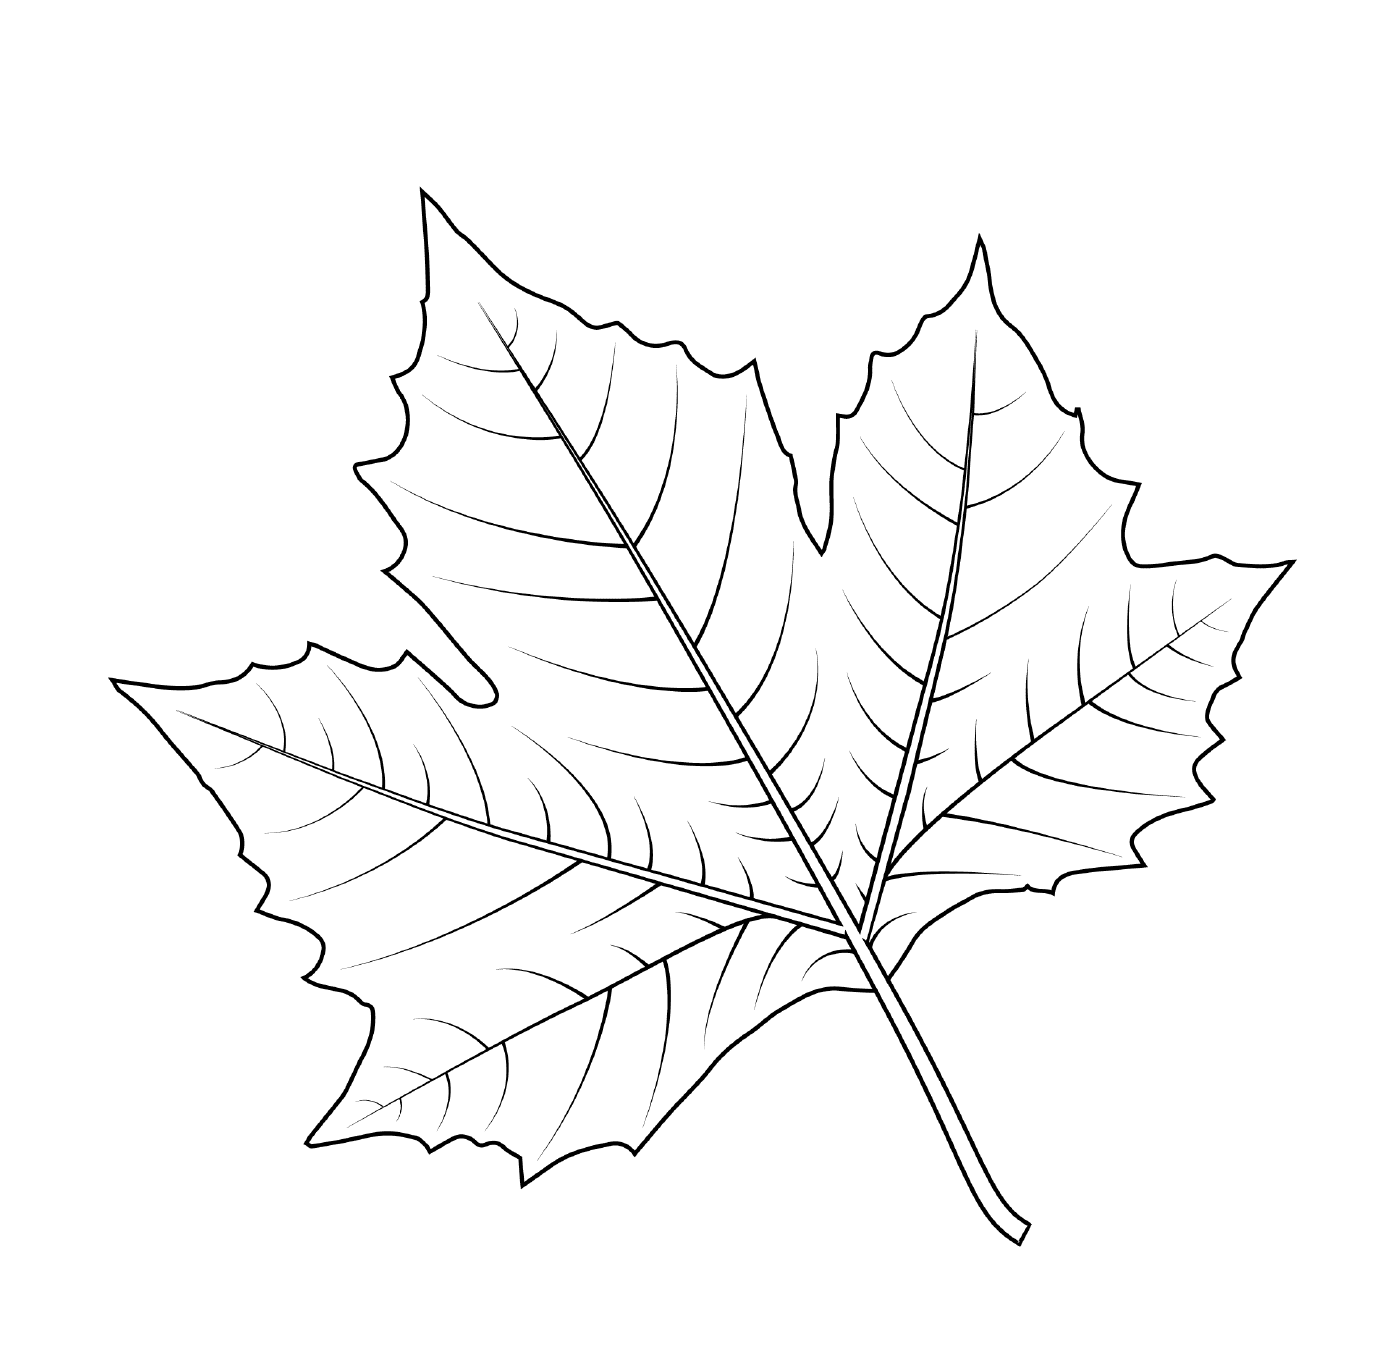  London plane tree leaf 